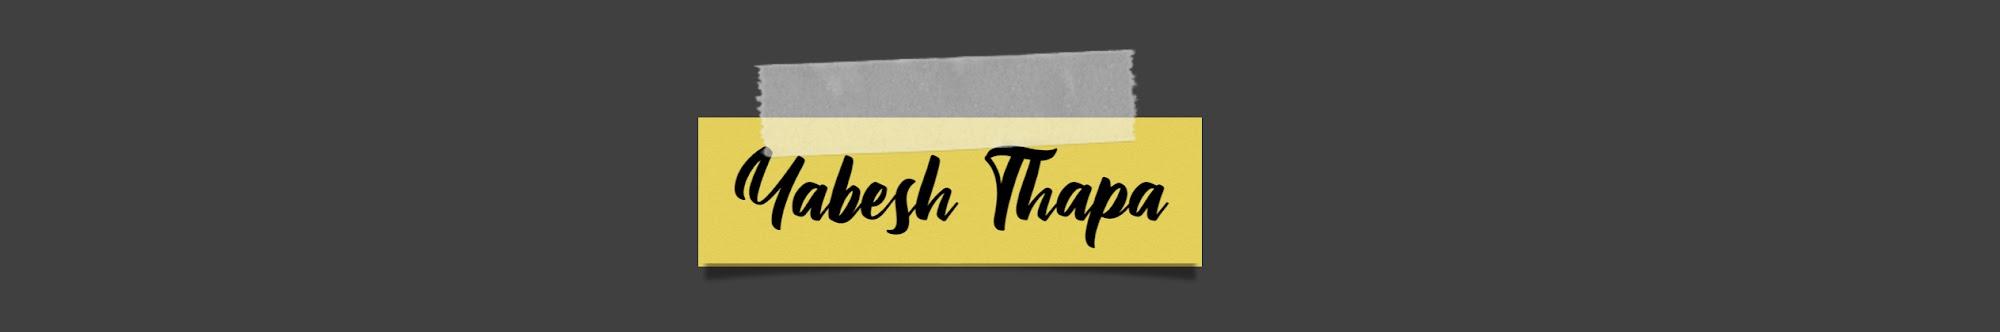 Yabesh Thapa